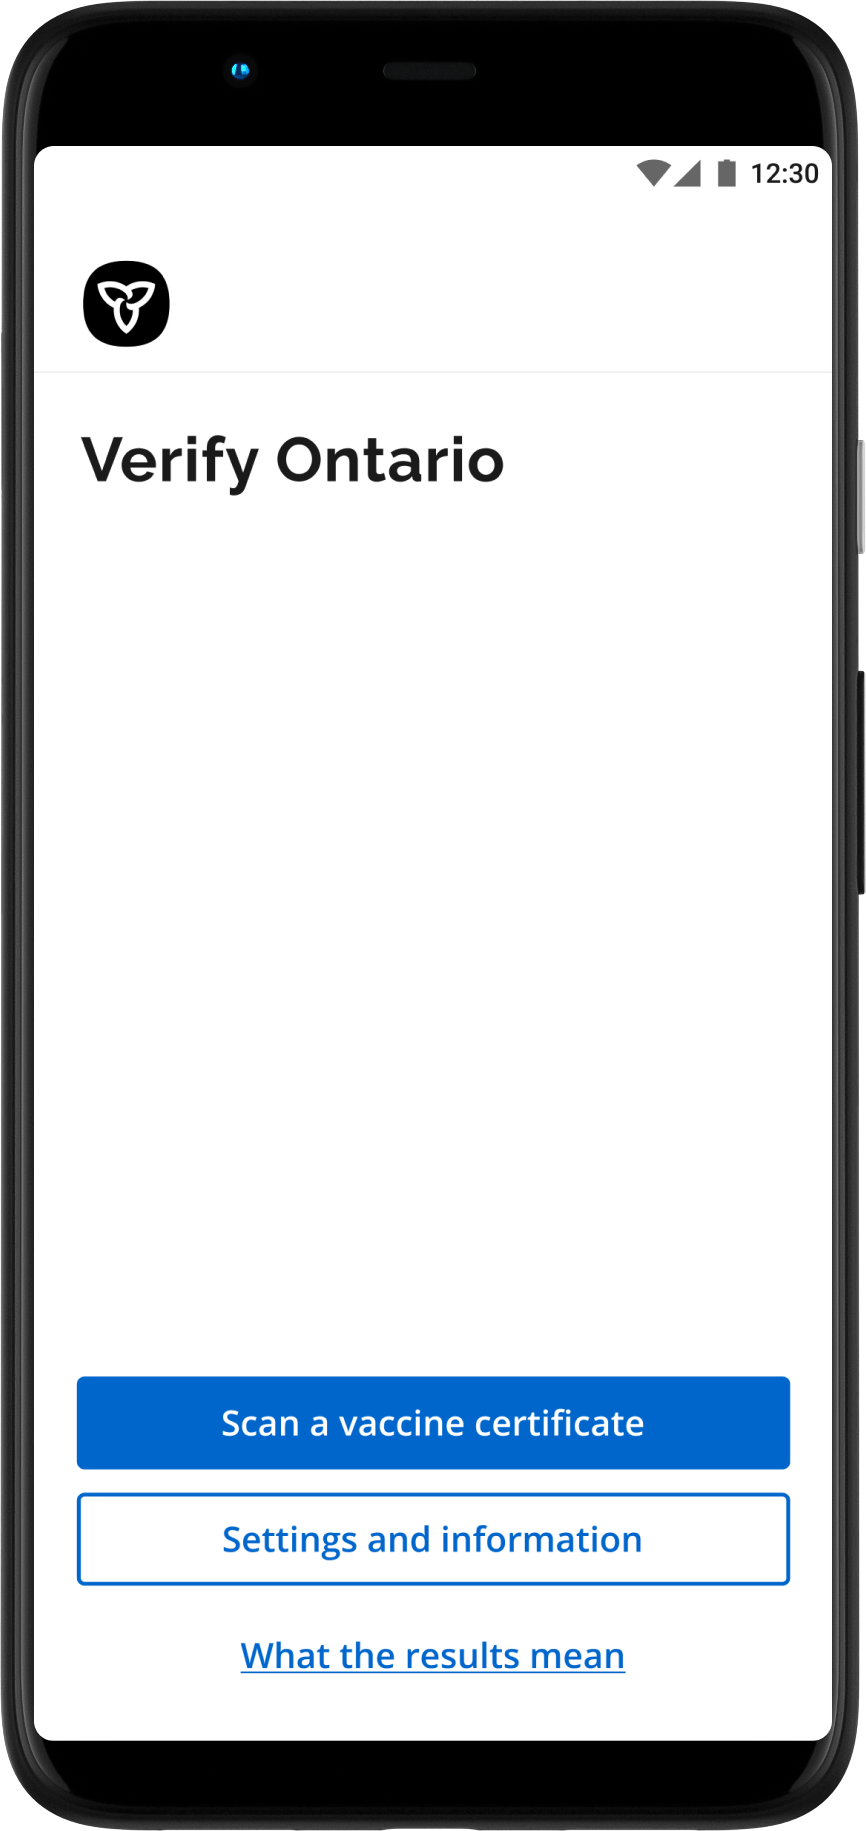 Home screen of the Verify Ontario app